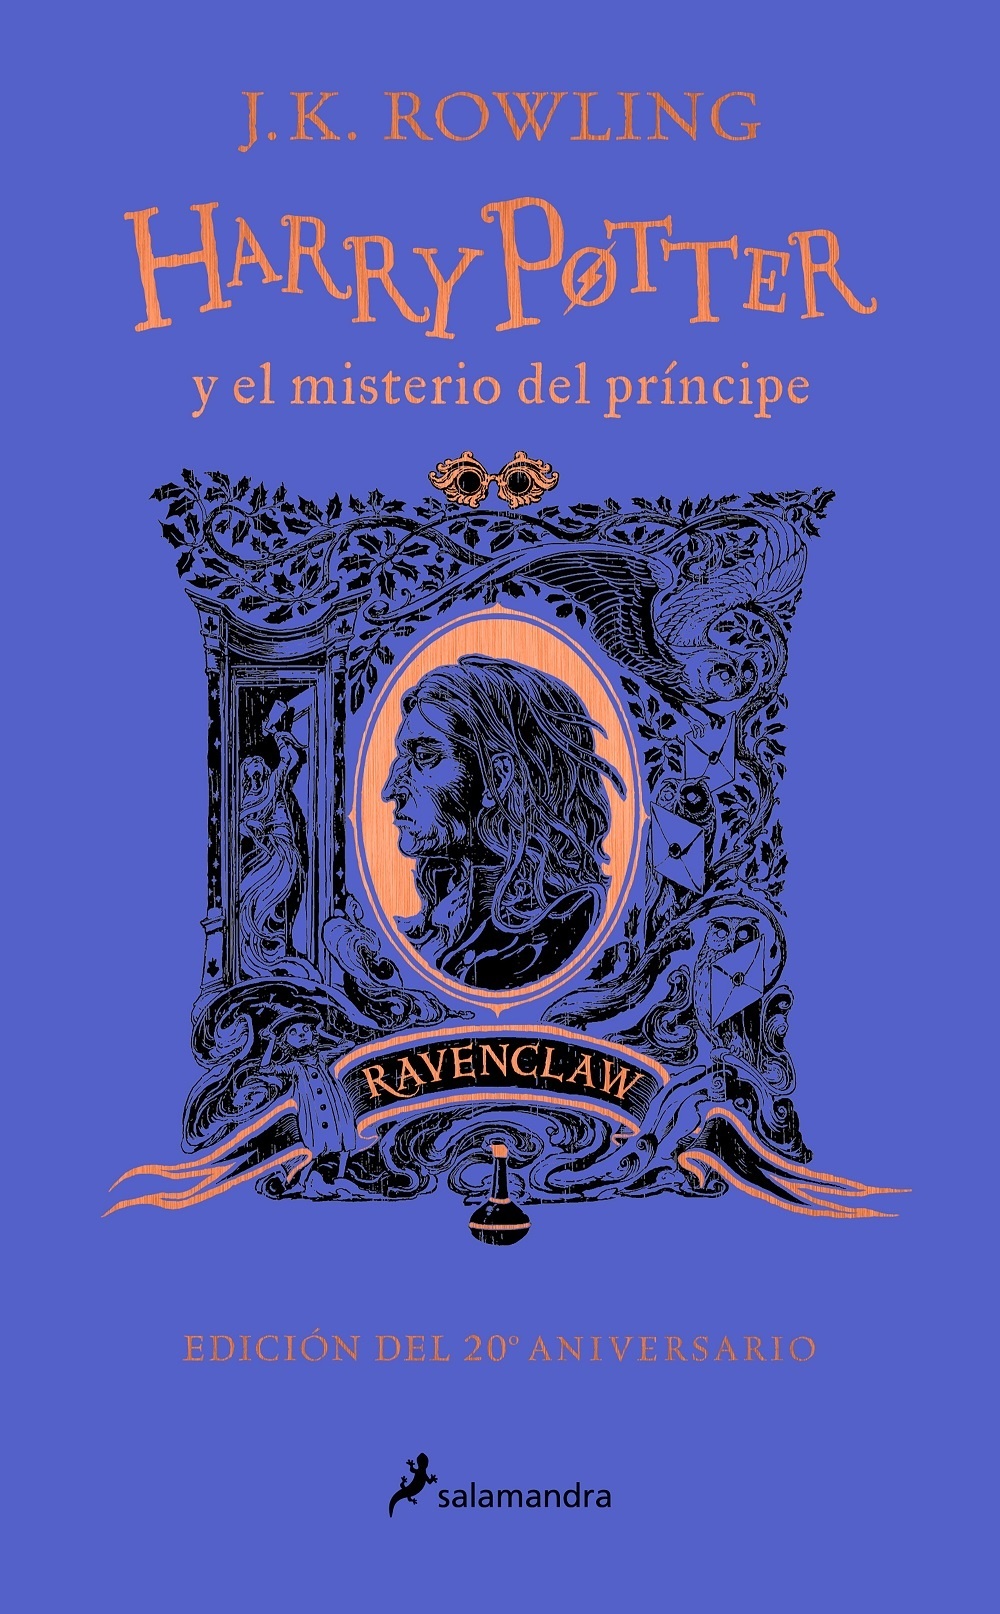 Harry Potter y el misterio del principe (20 aniversario Ravenclaw). 